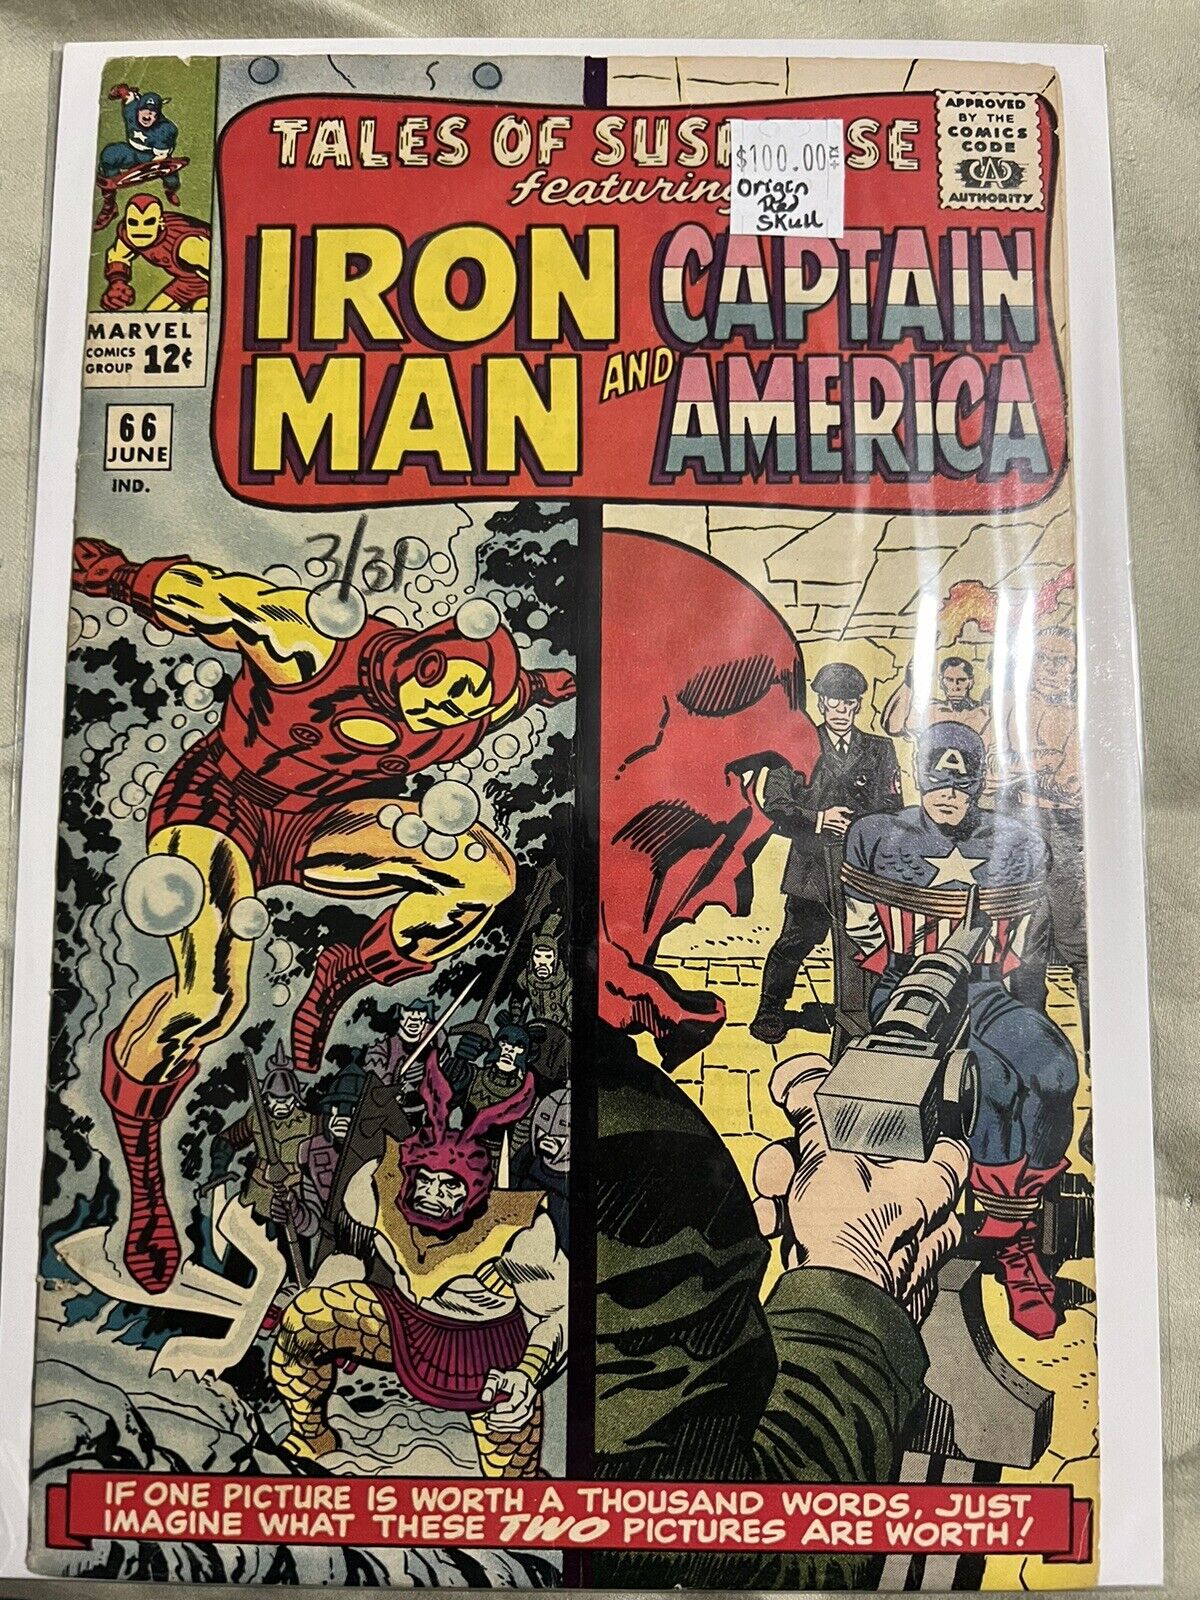 Comic Tales of Suspense #66 Iron Man & Captain America. 1965 Red Skull Origin